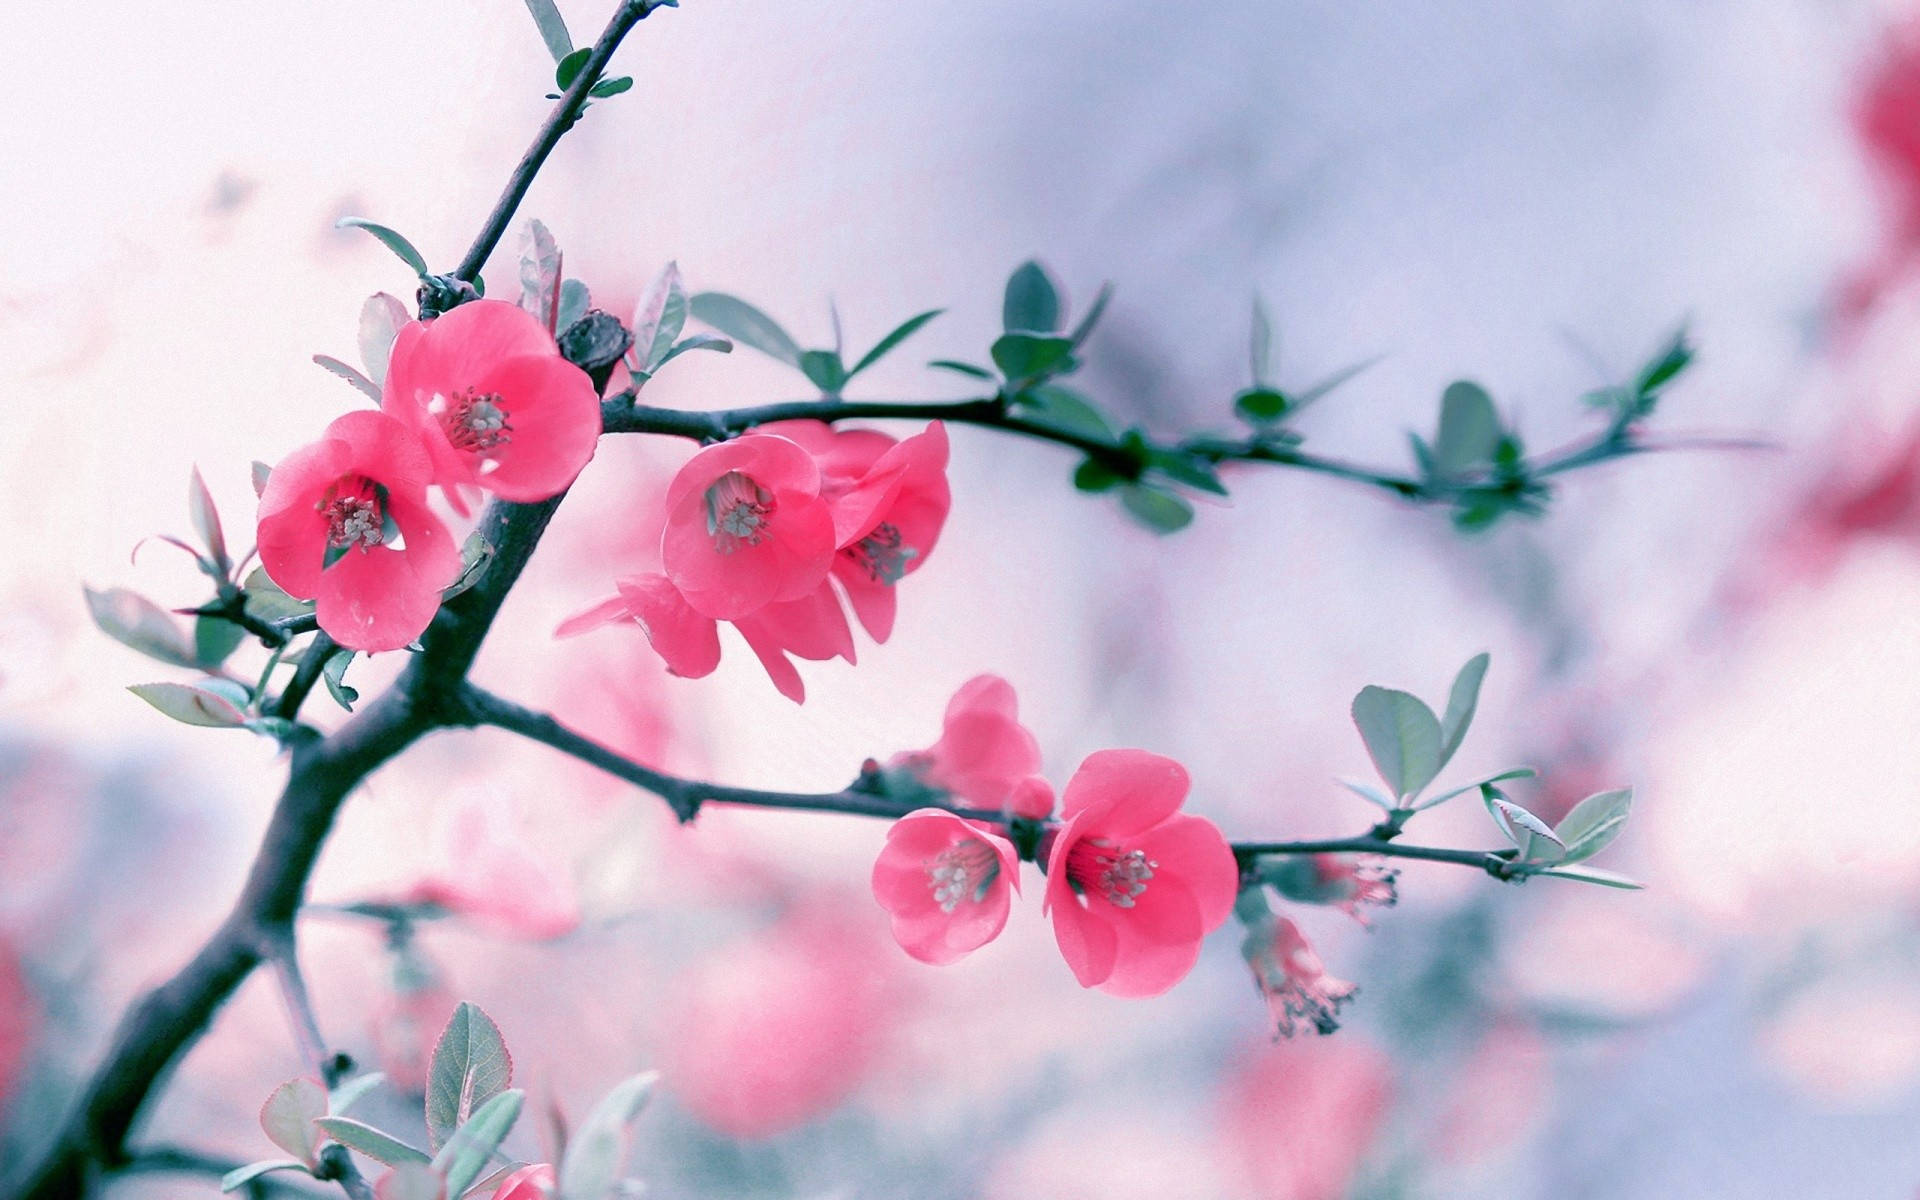 Flower Hd Pink Cherry Blossoms Wallpaper